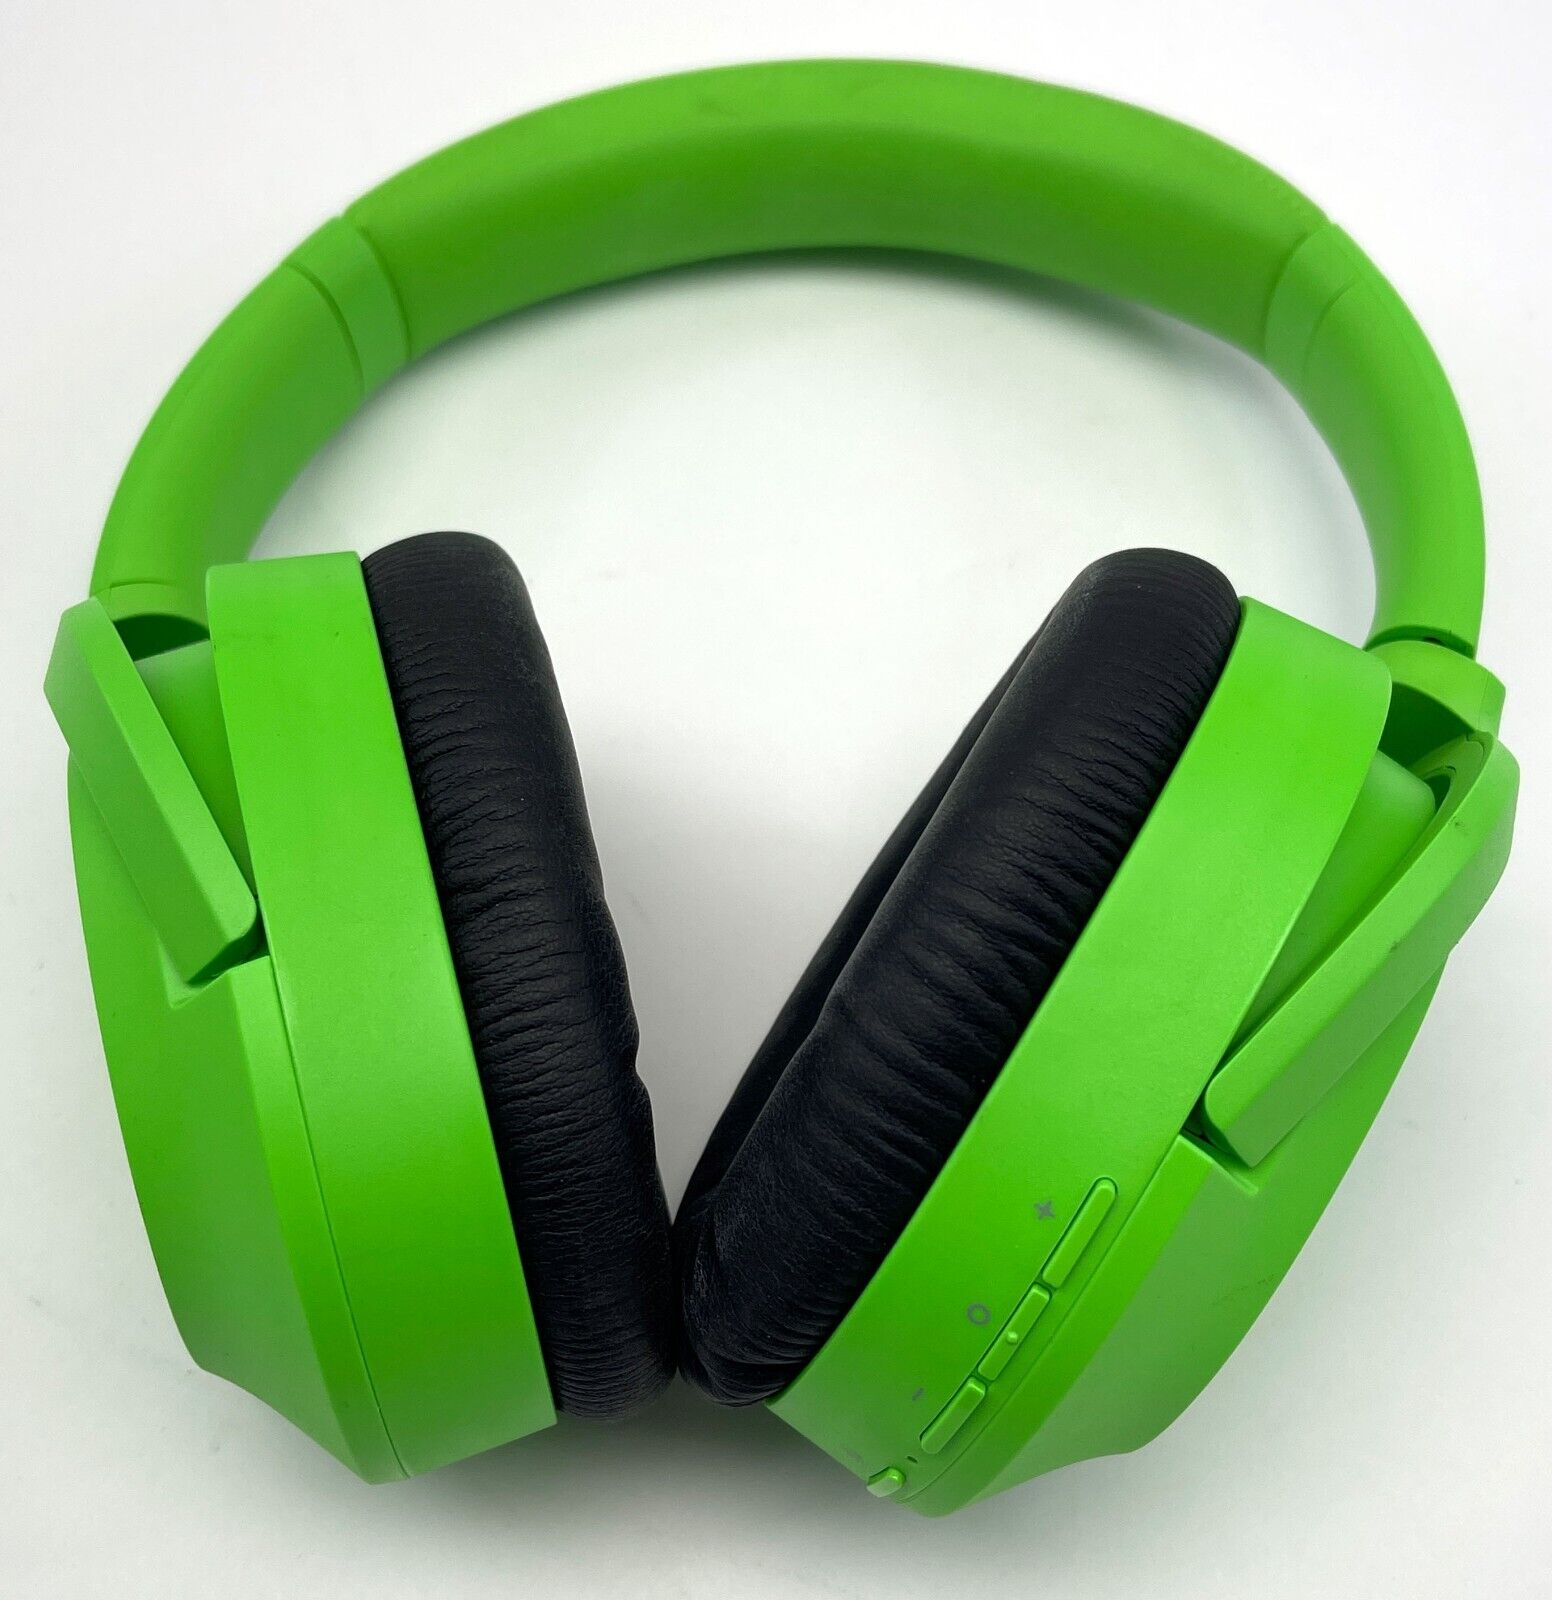 Razer Opus X Wireless Low Latency Headset: Green - Used- Headset Only